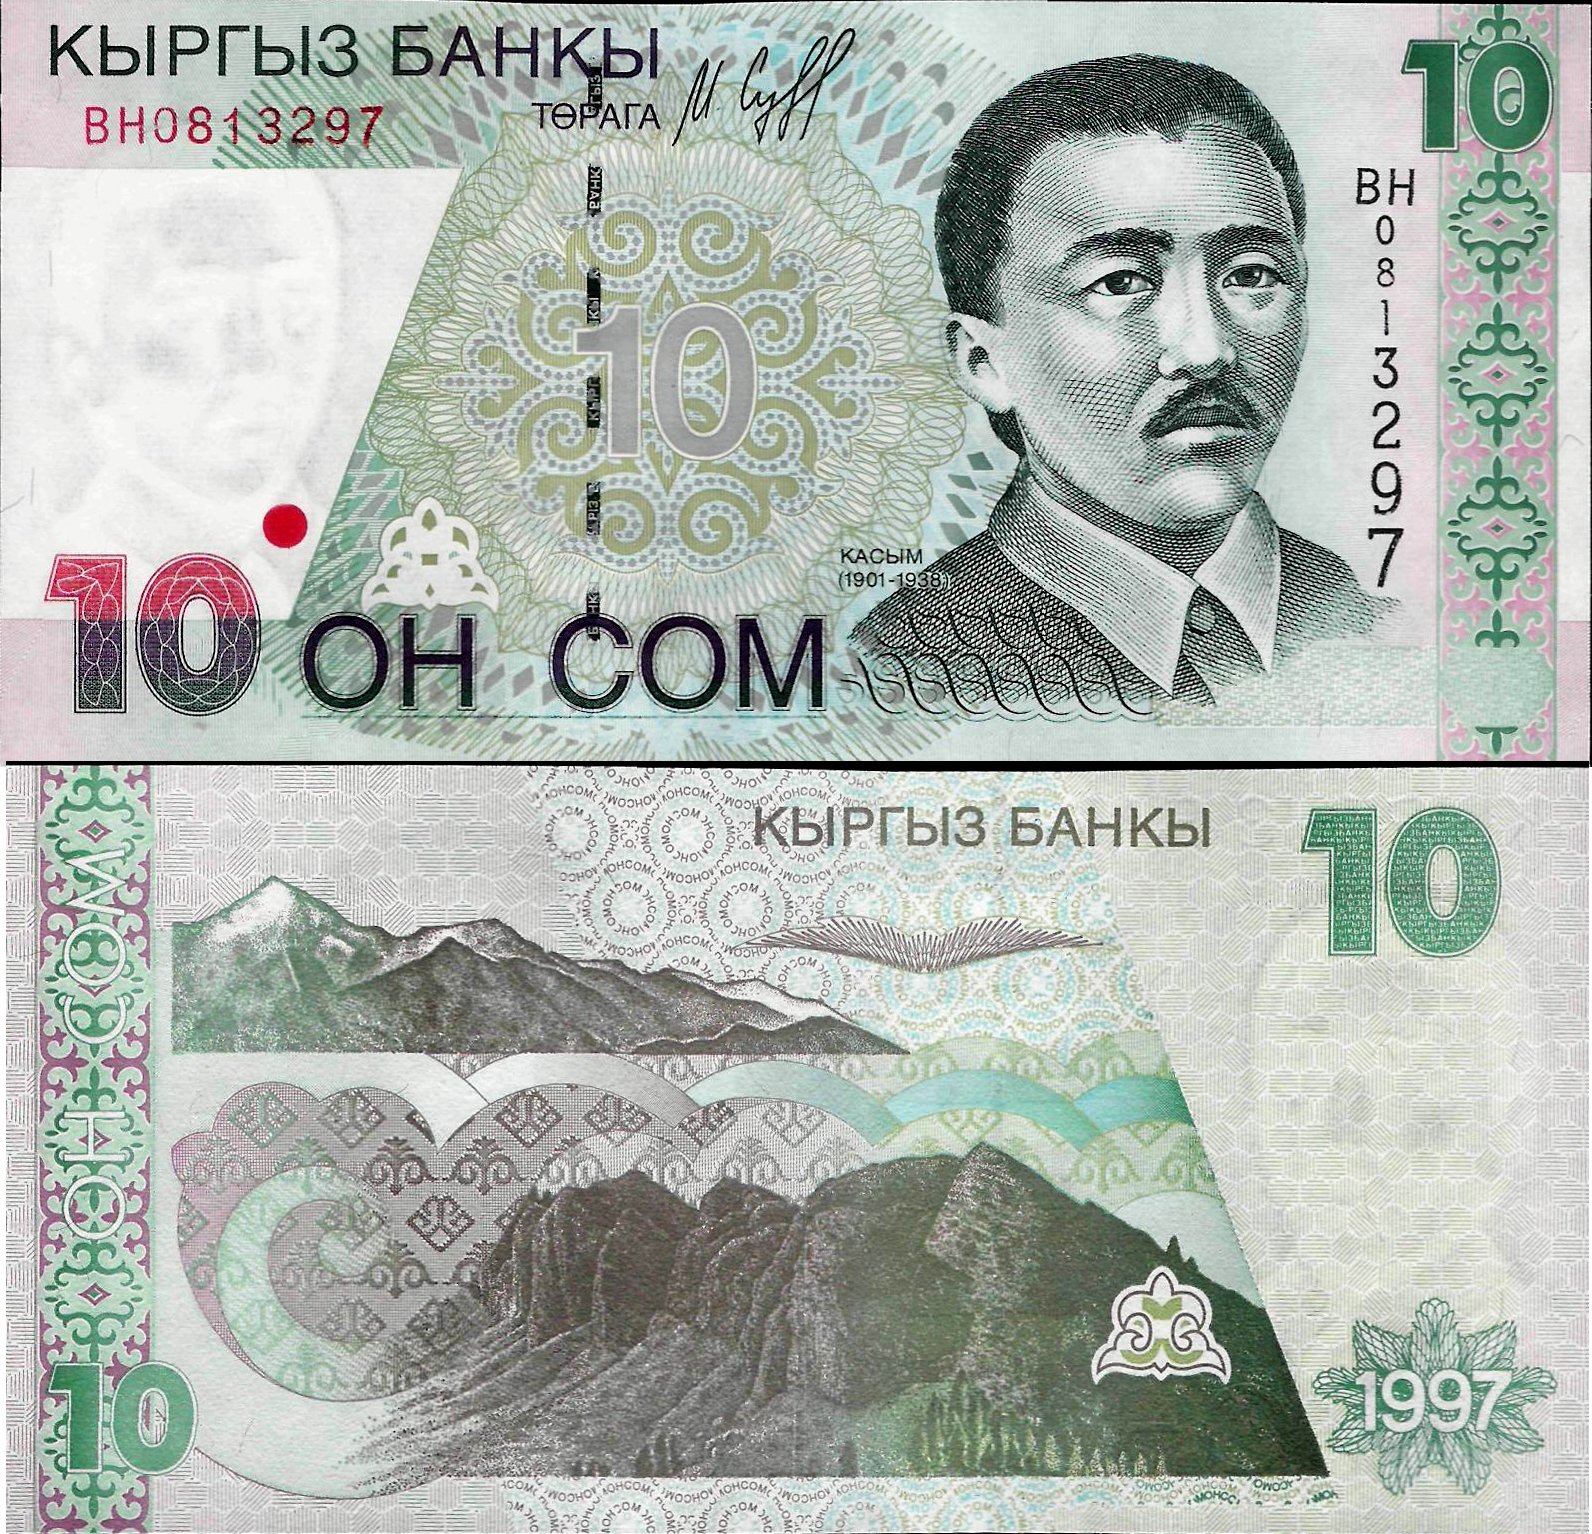 Киргизский сум. Банкноты Киргизии: 10 сом. Киргизская купюра 10 000 сом. Киргизские 10 сомов. Купюра 10 сом.